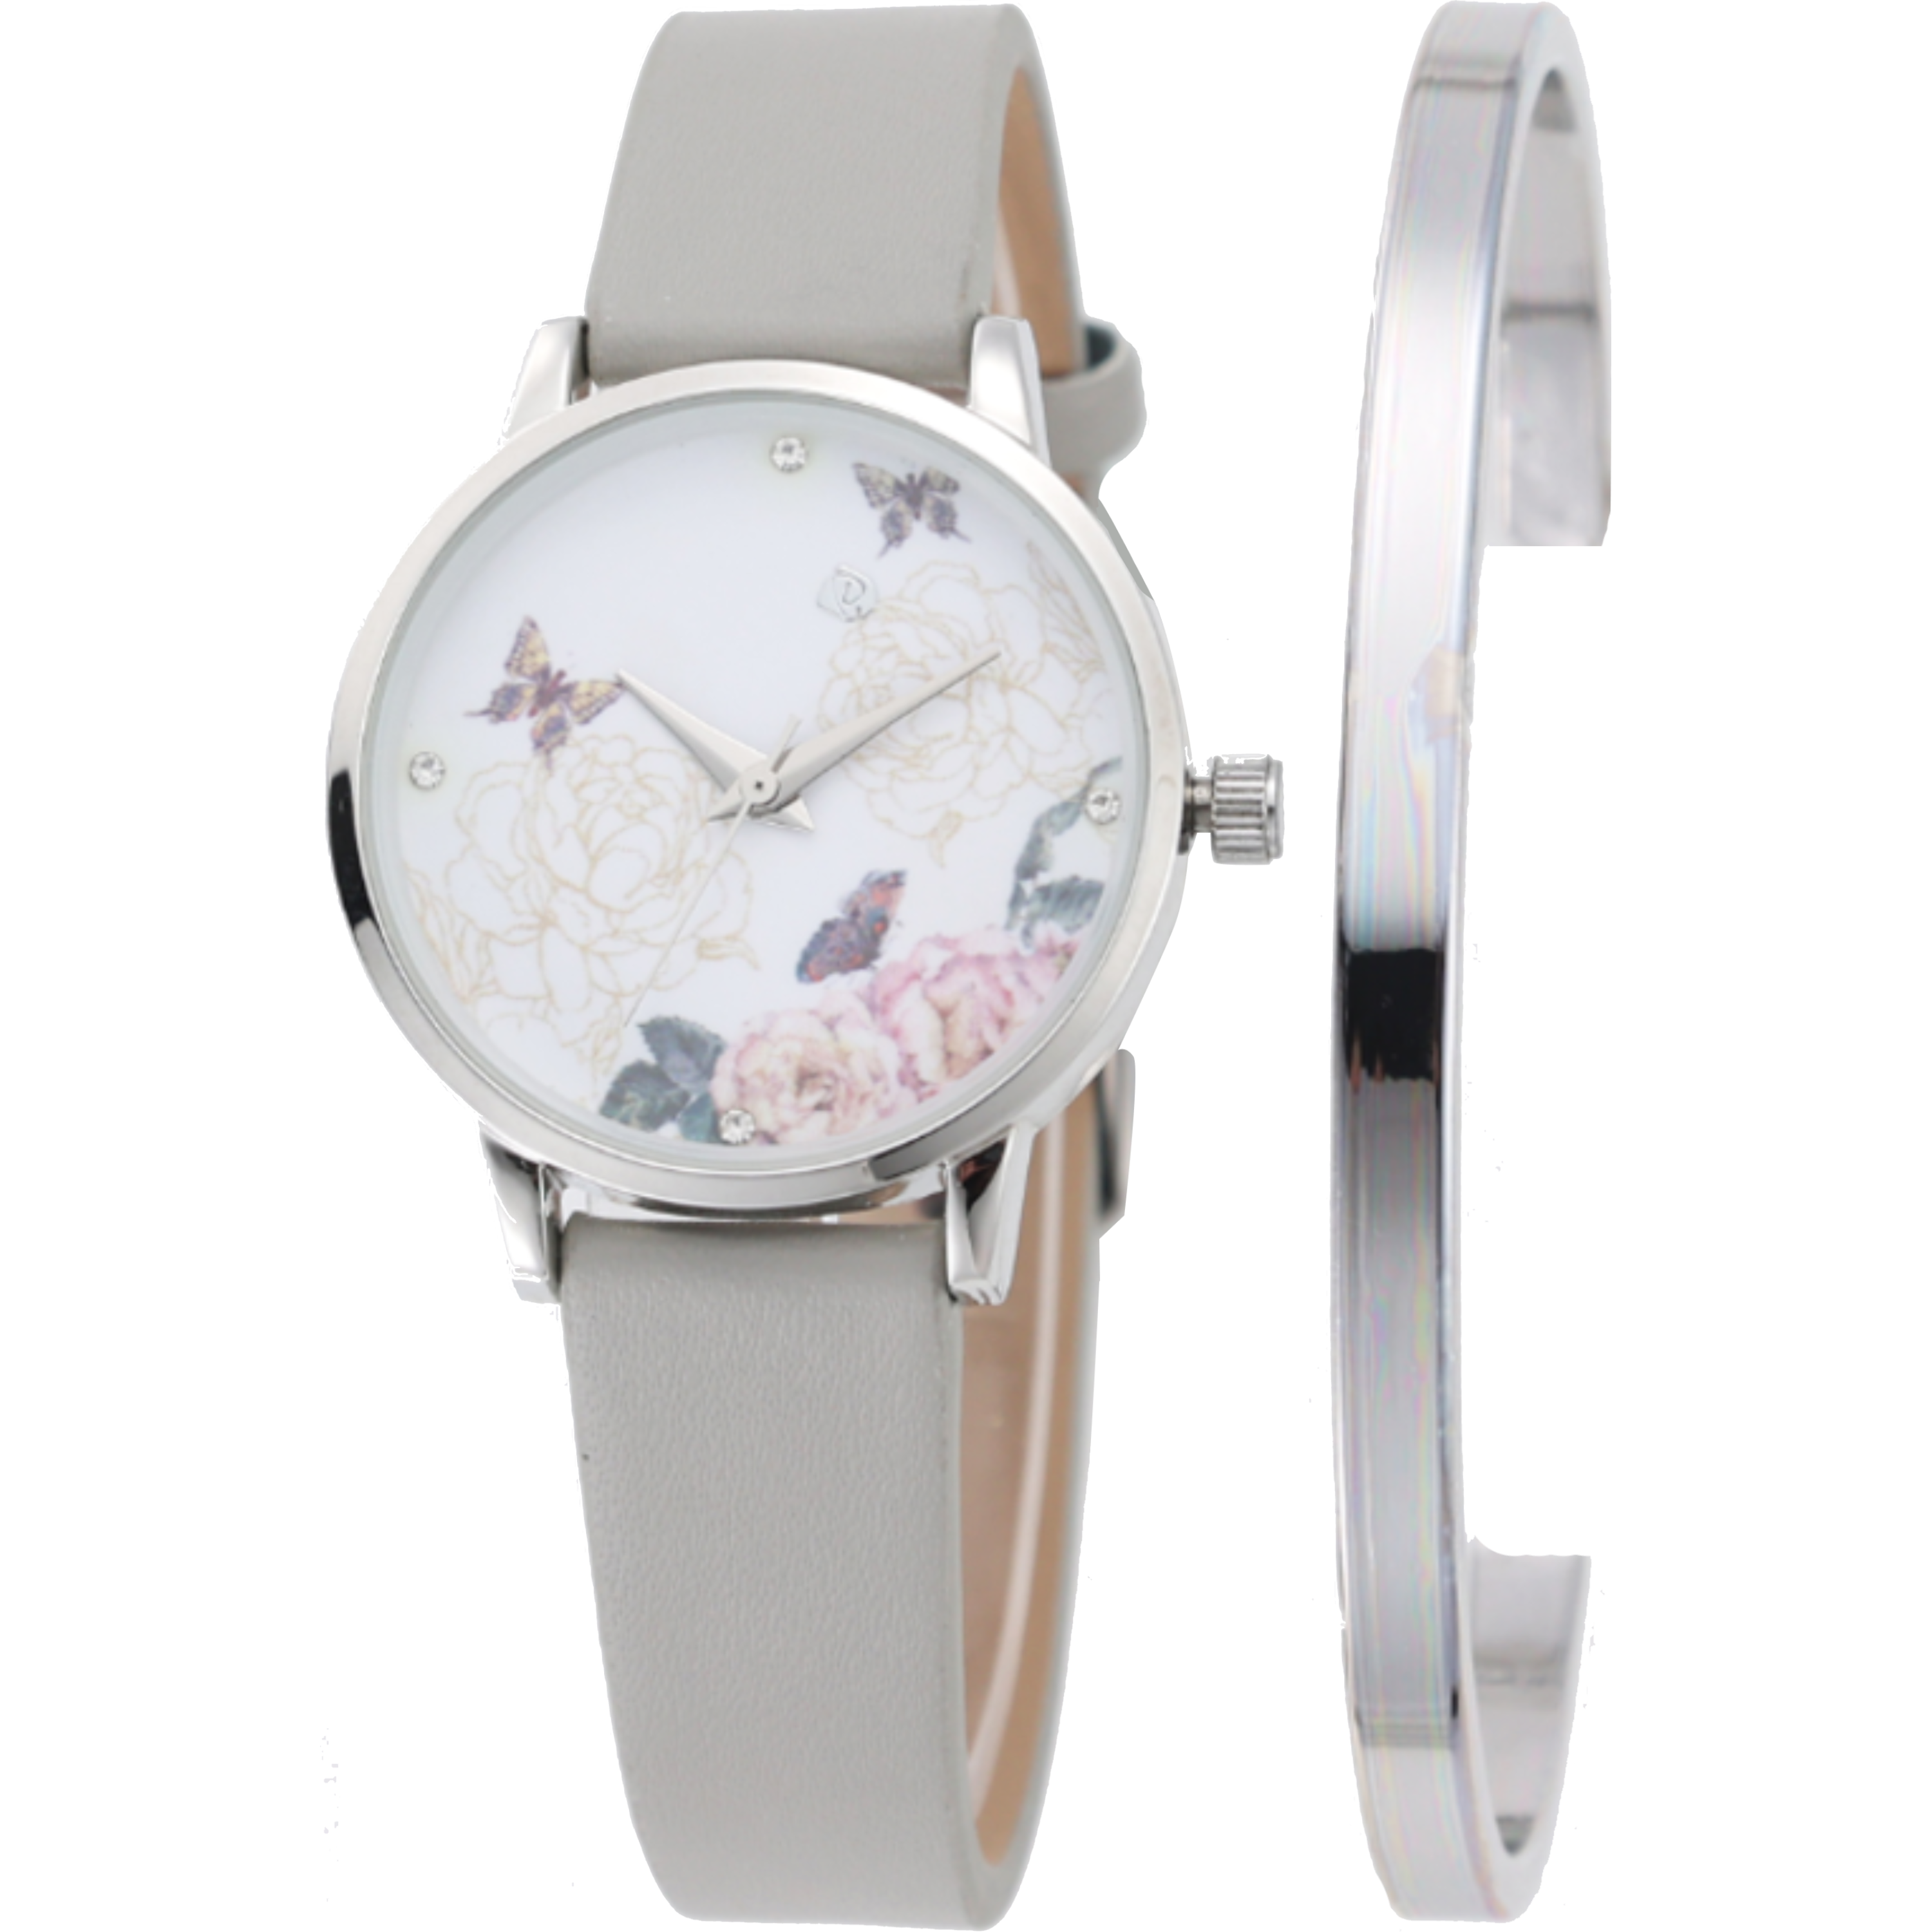 שעון יד לאישה עם צמיד COMTEX SY40 32mm - צבע אפור אחריות לשנה ע"י היבואן הרשמי